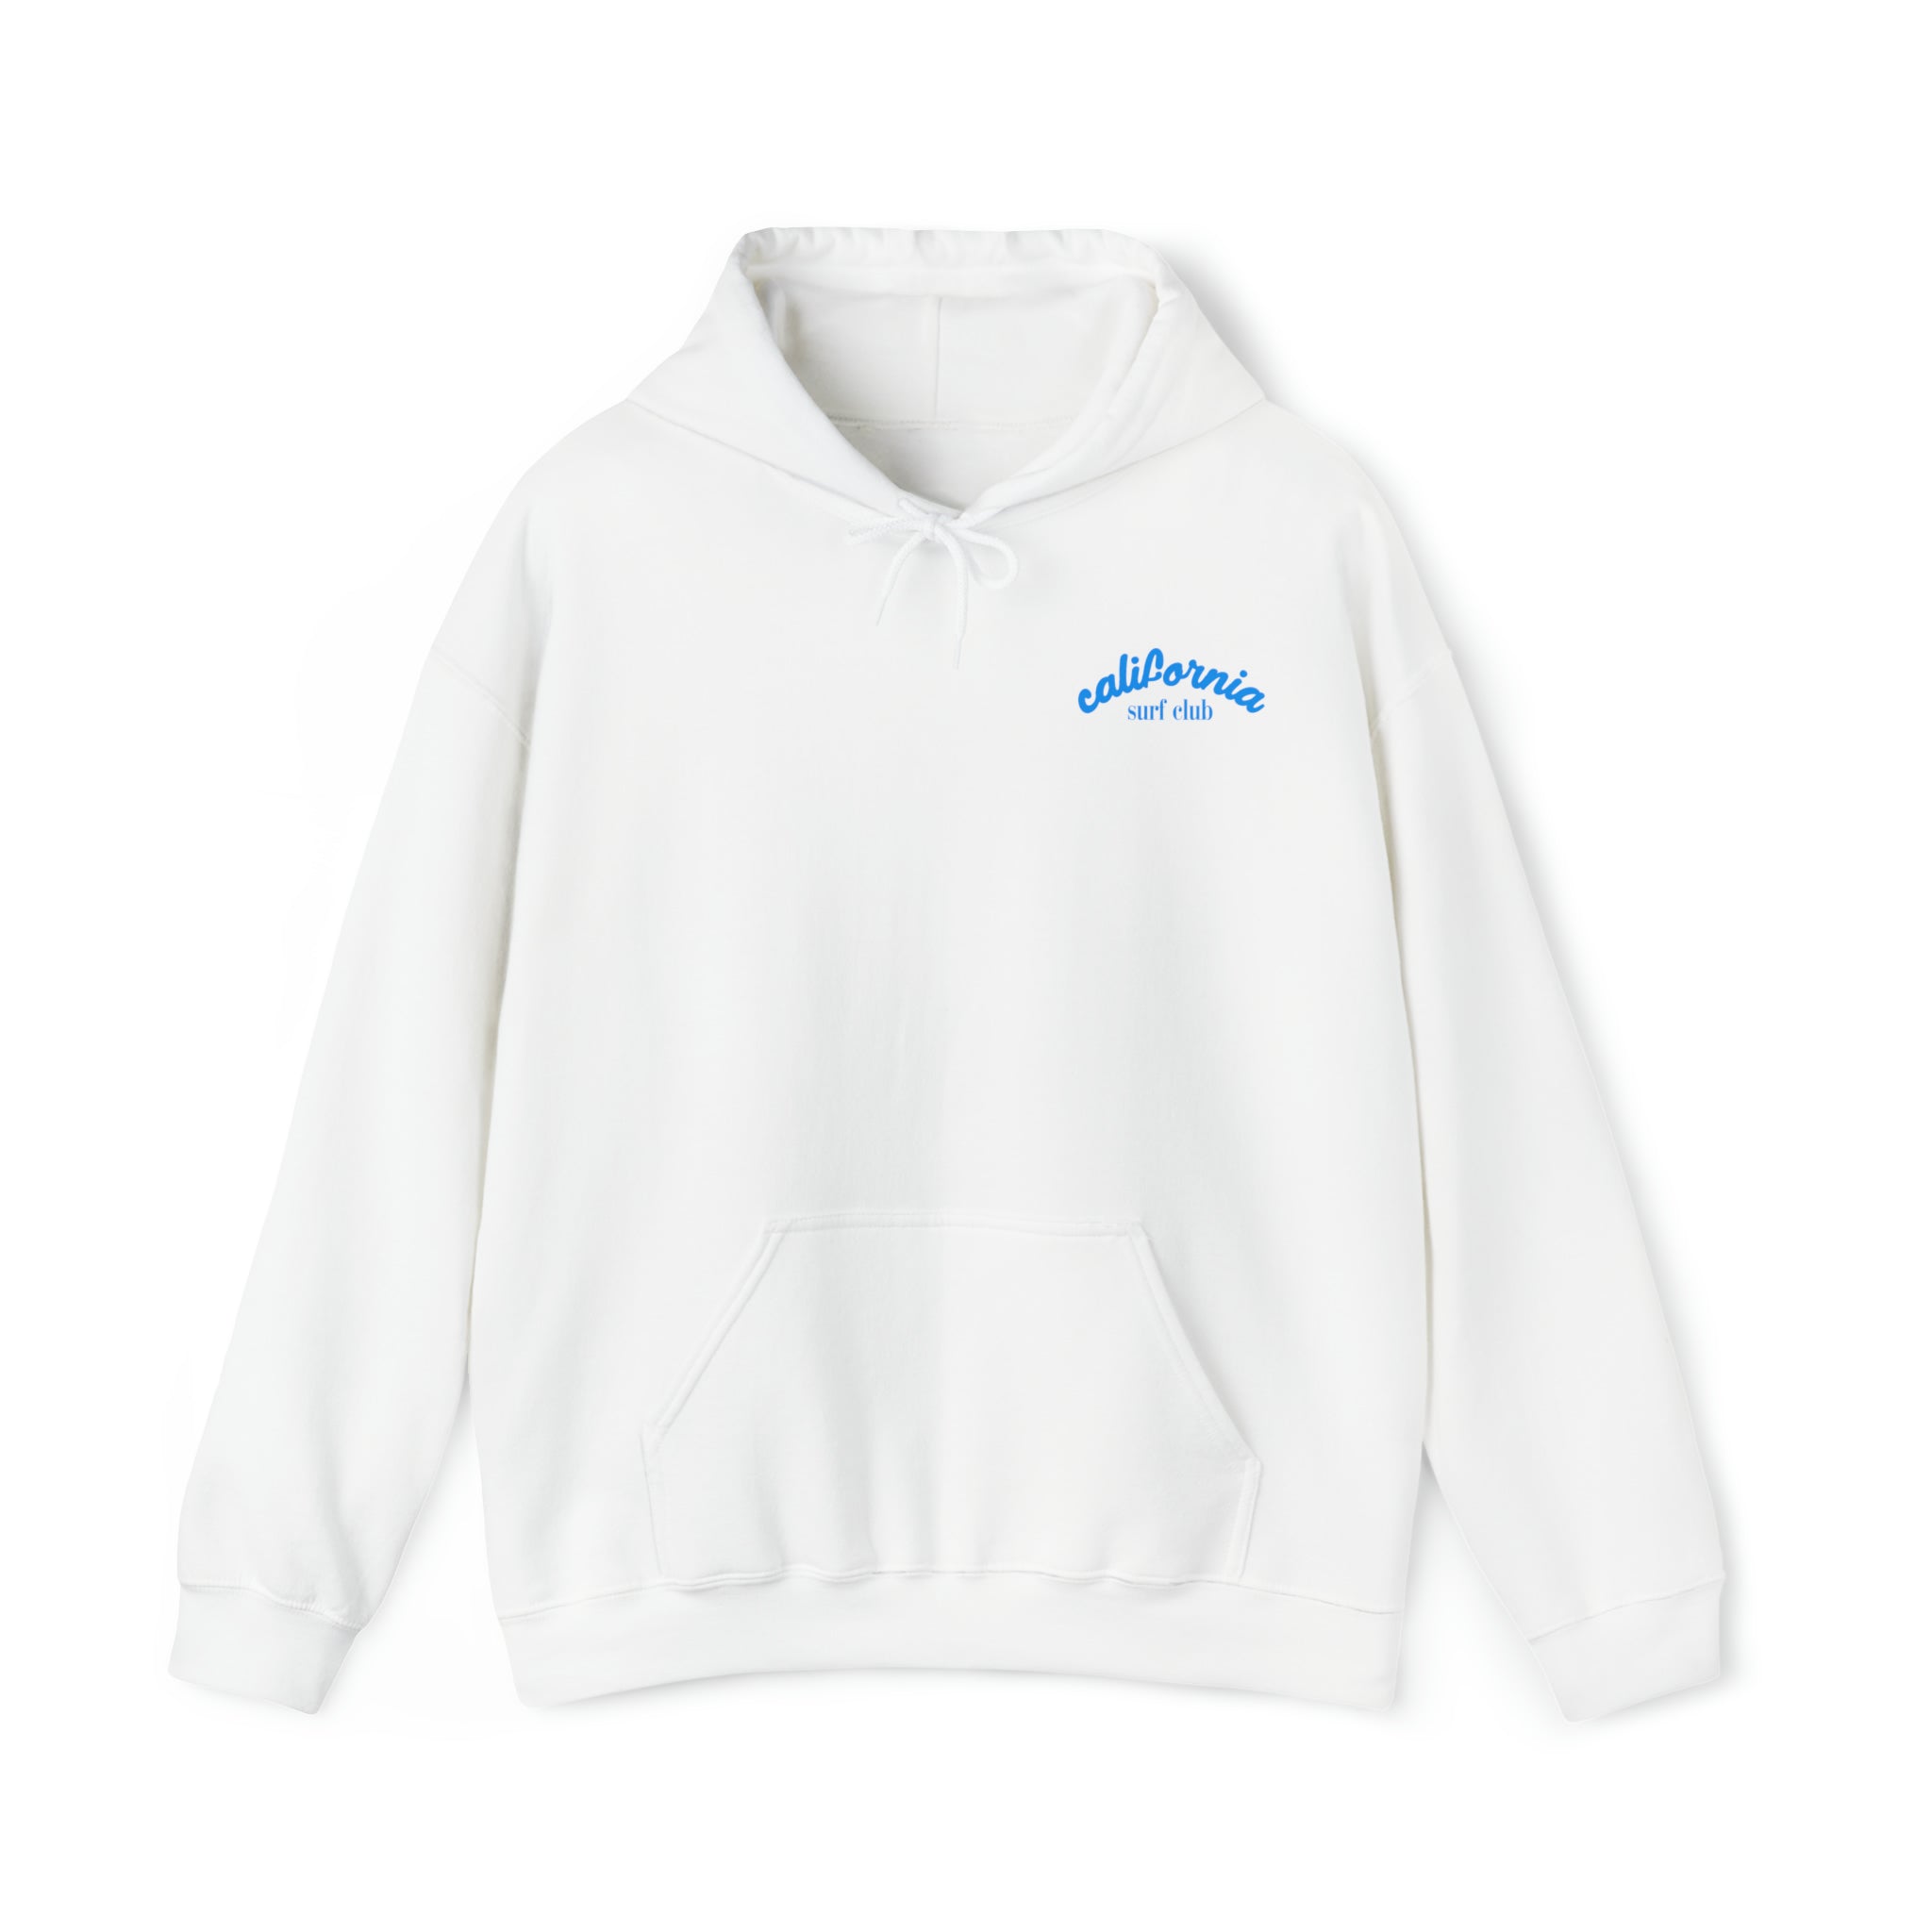 Cali Surf Club Hoodie Sweatshirt in white